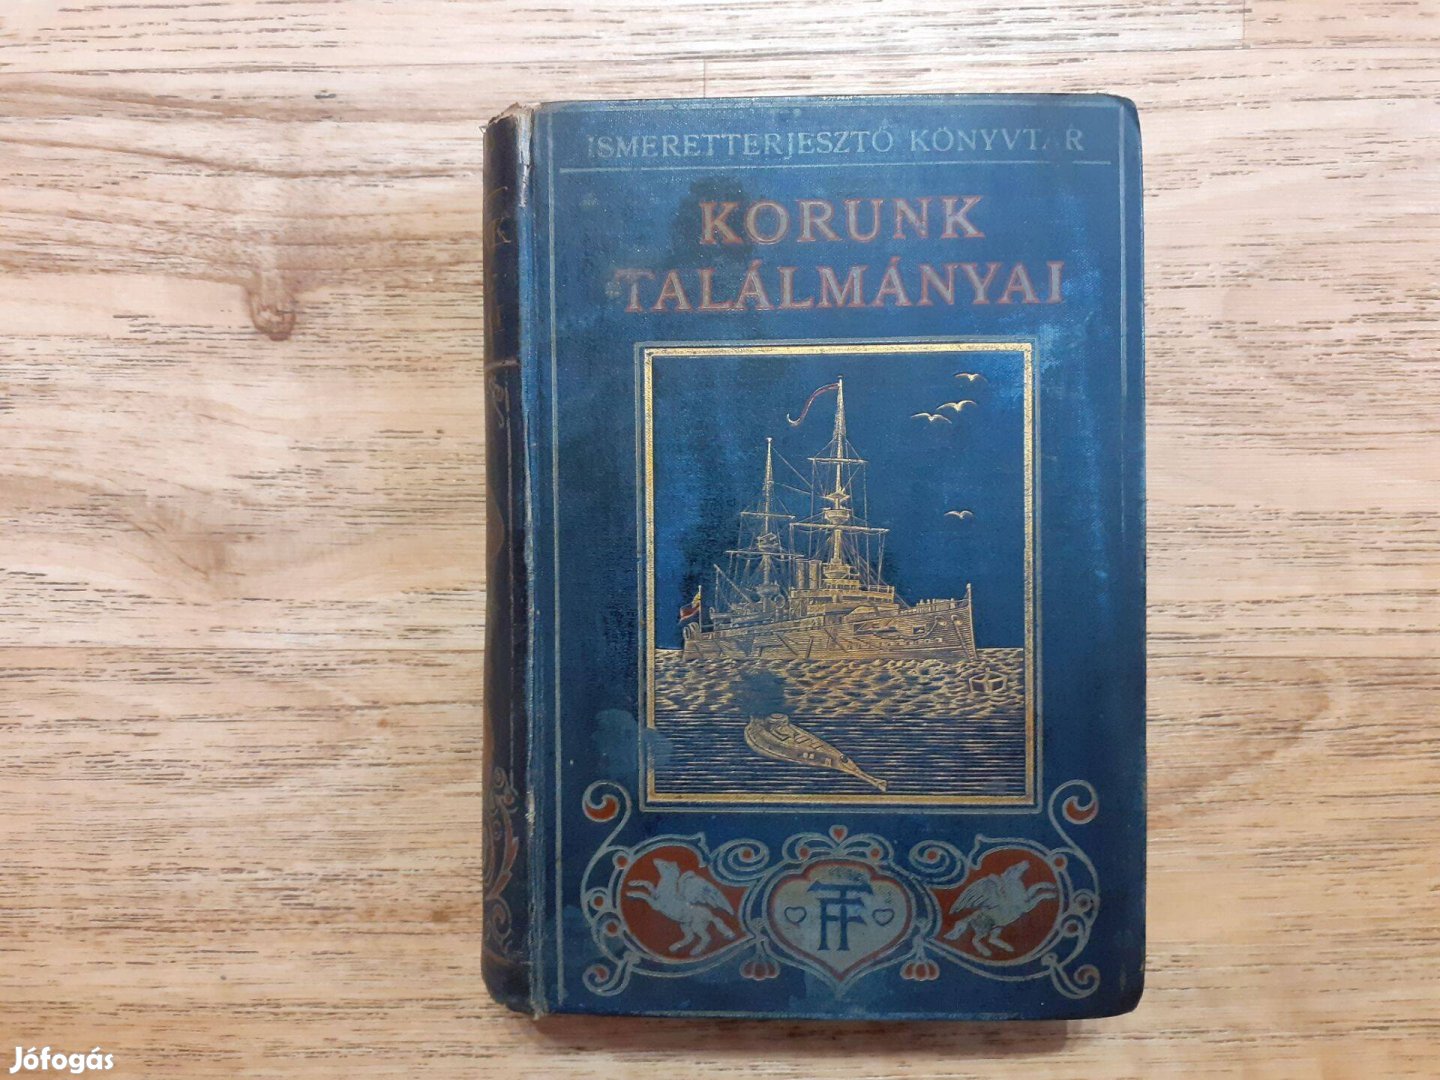 Ismeretterjesztő Könyvtár - Korunk találmányai (1910)